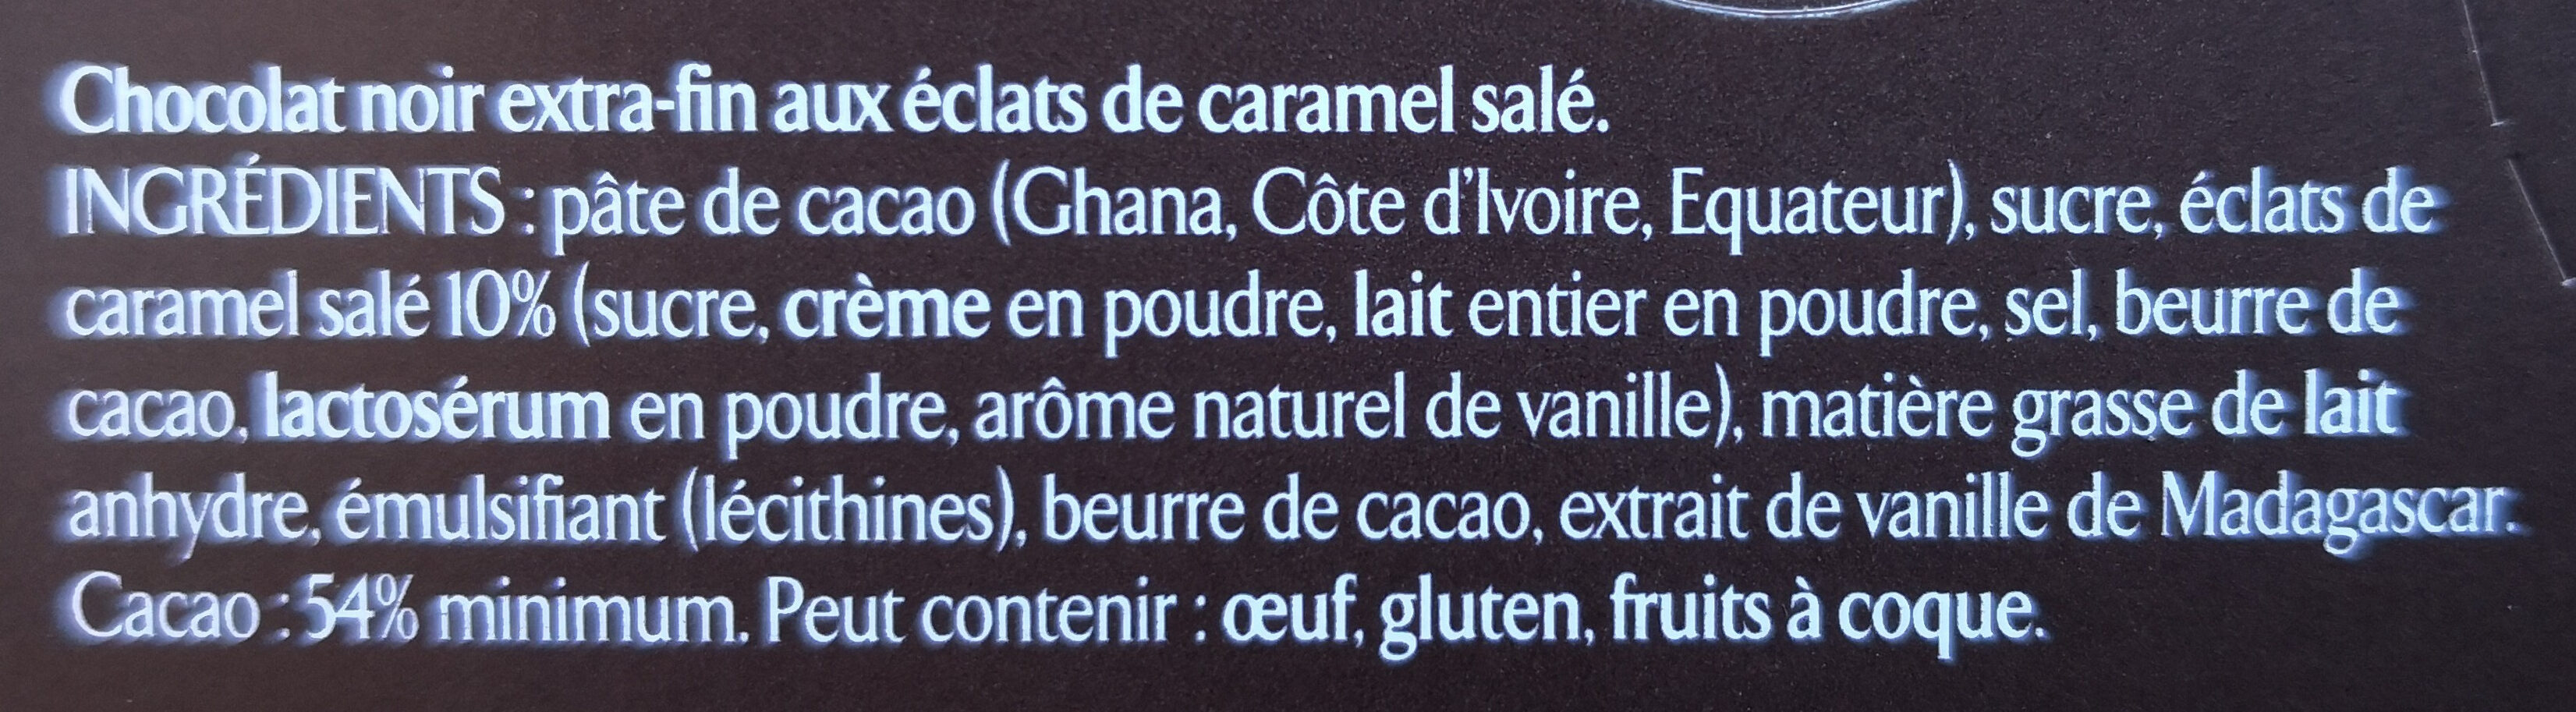 NESTLE L'ATELIER Noir Caramel 115g - Ingrédients